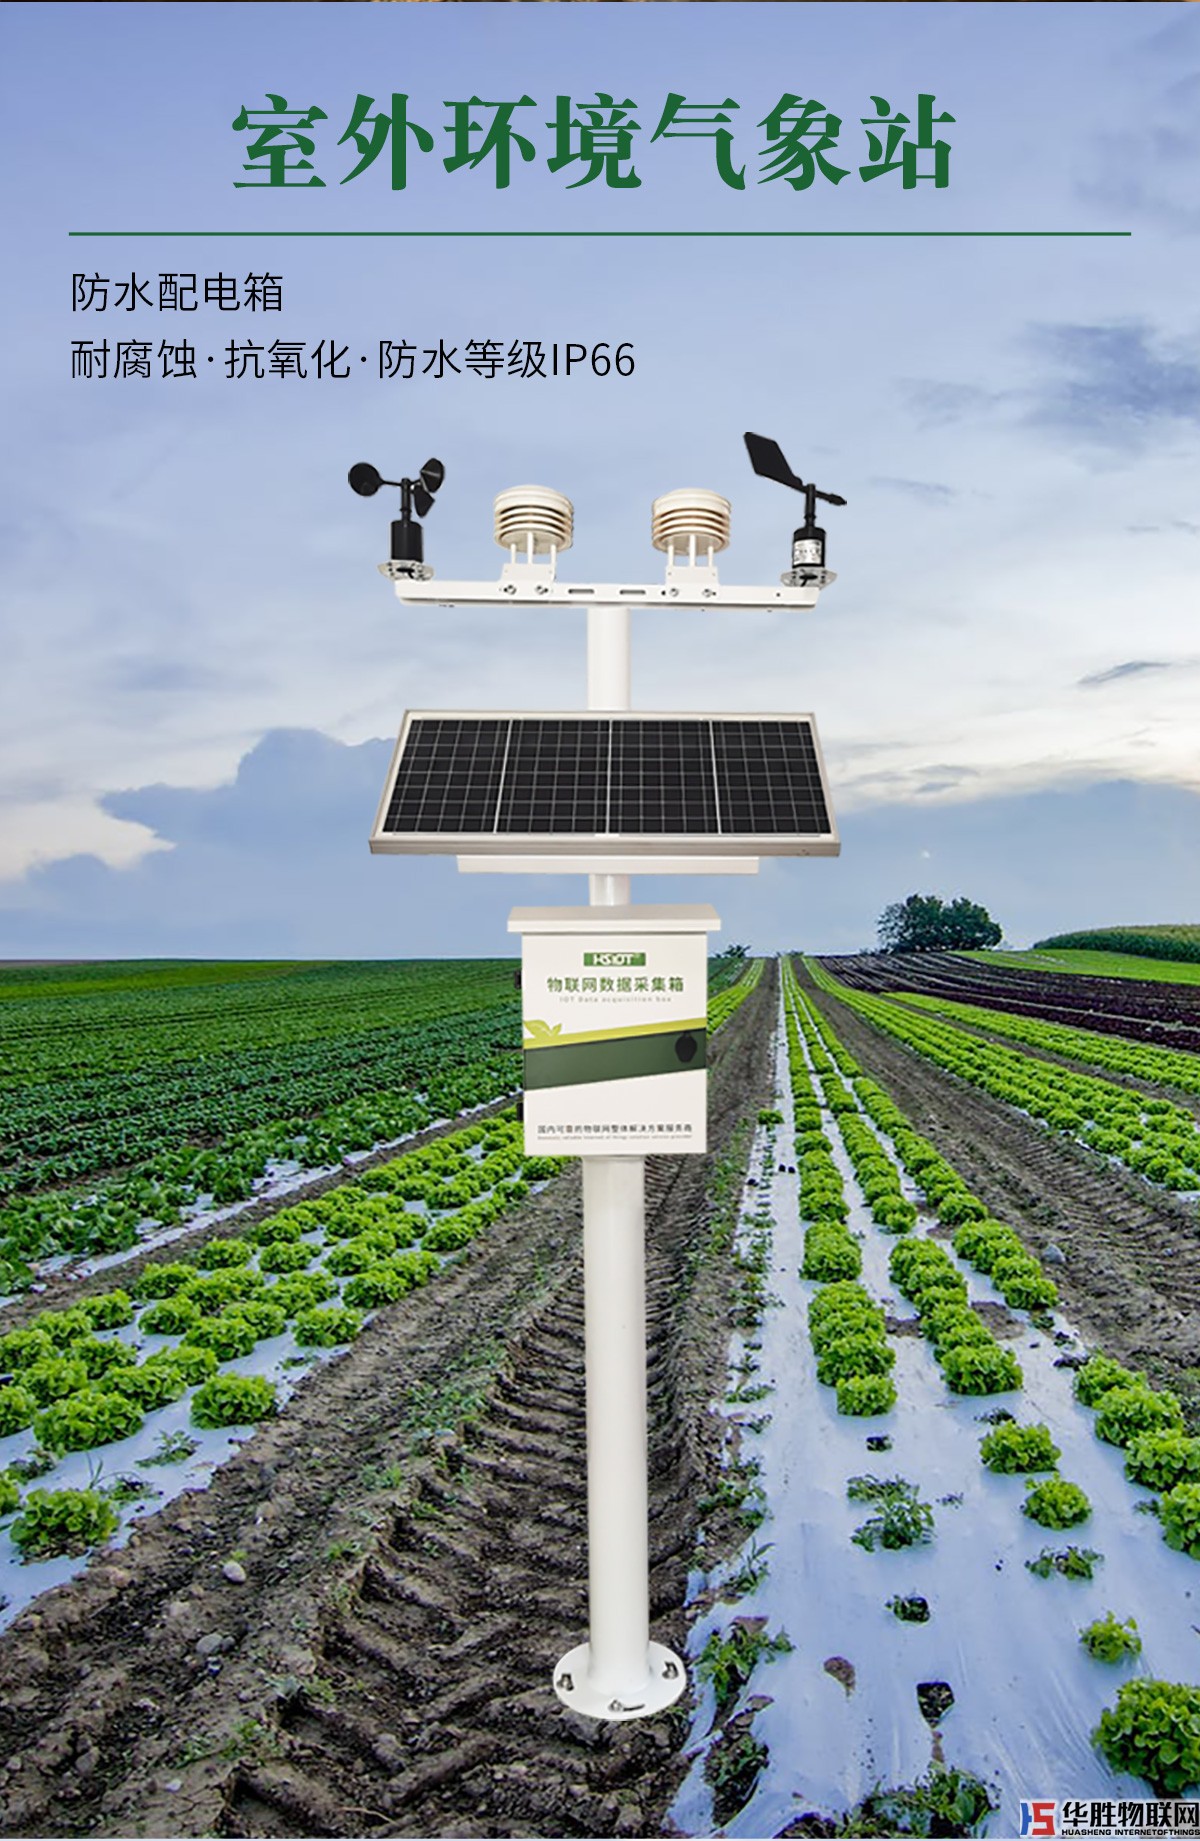 农业五情监测系统